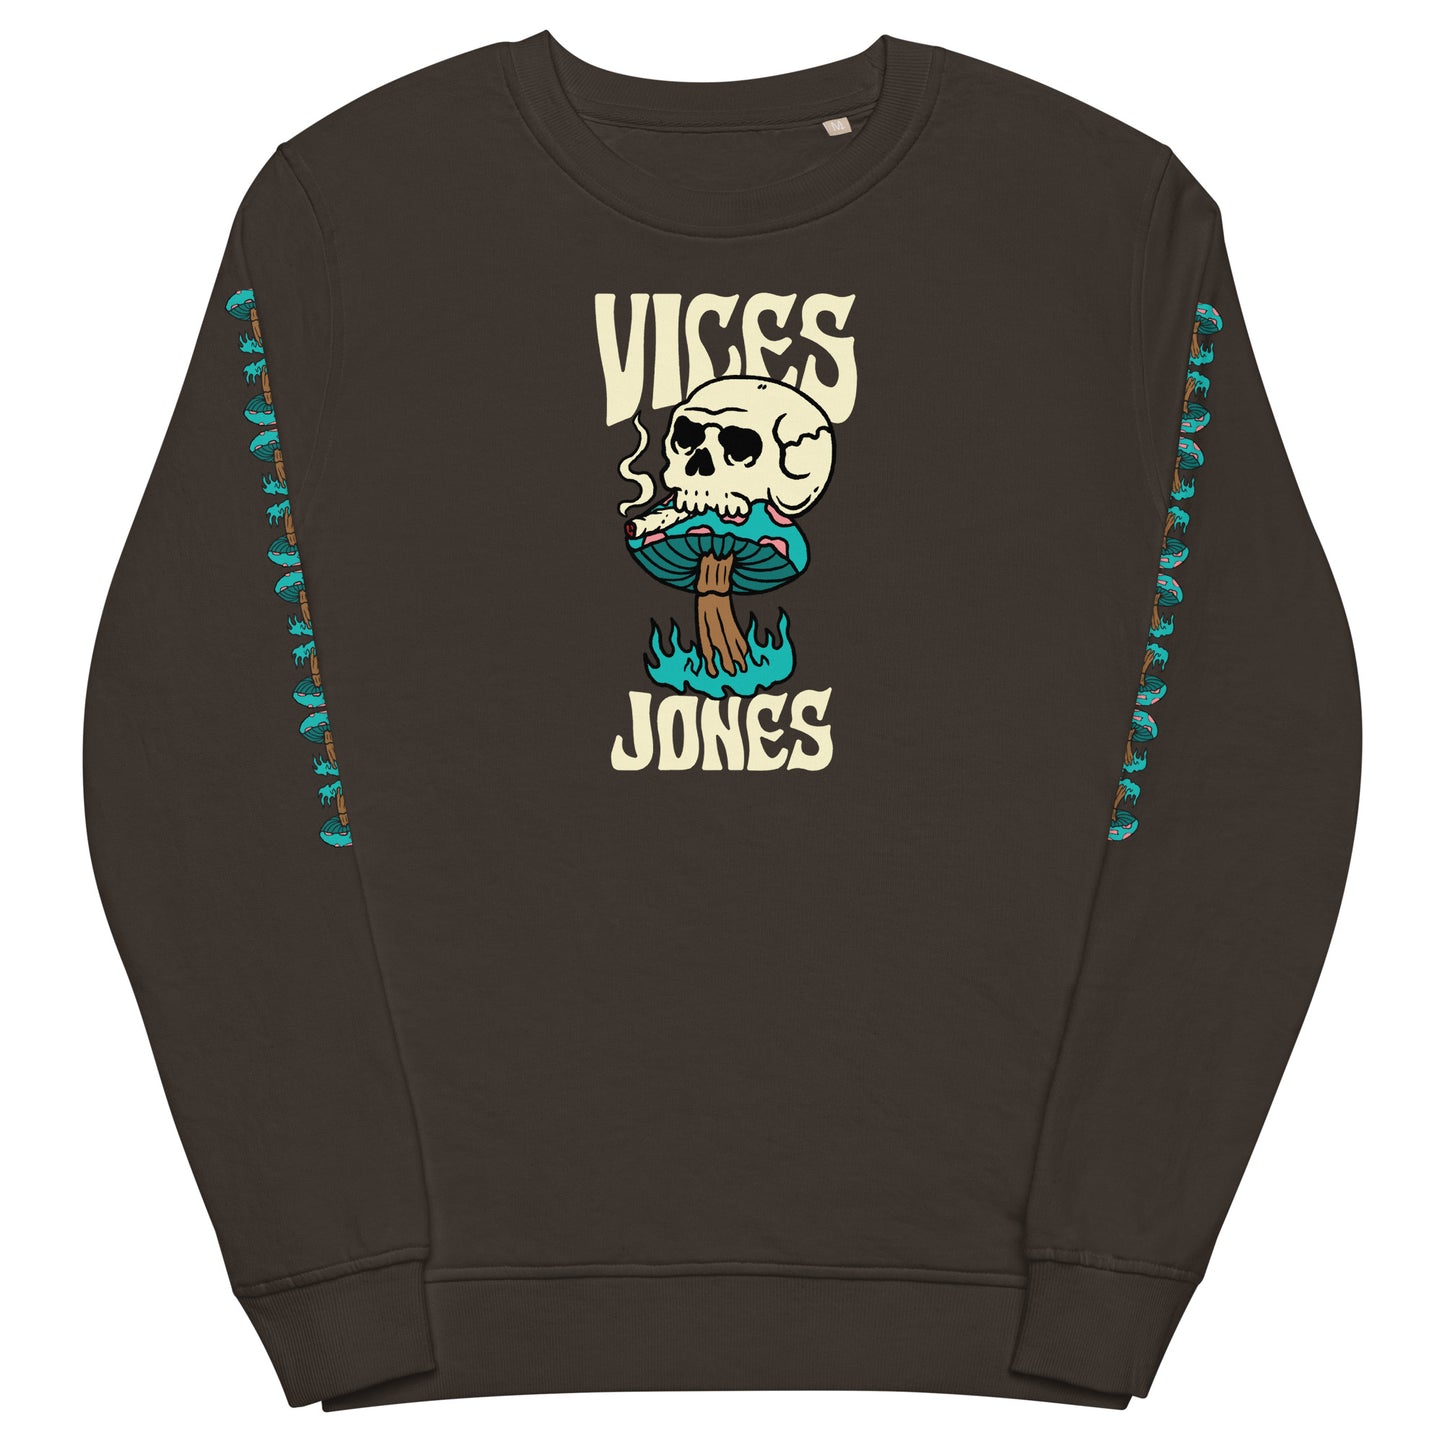 Jones - Vices Sweatshirt